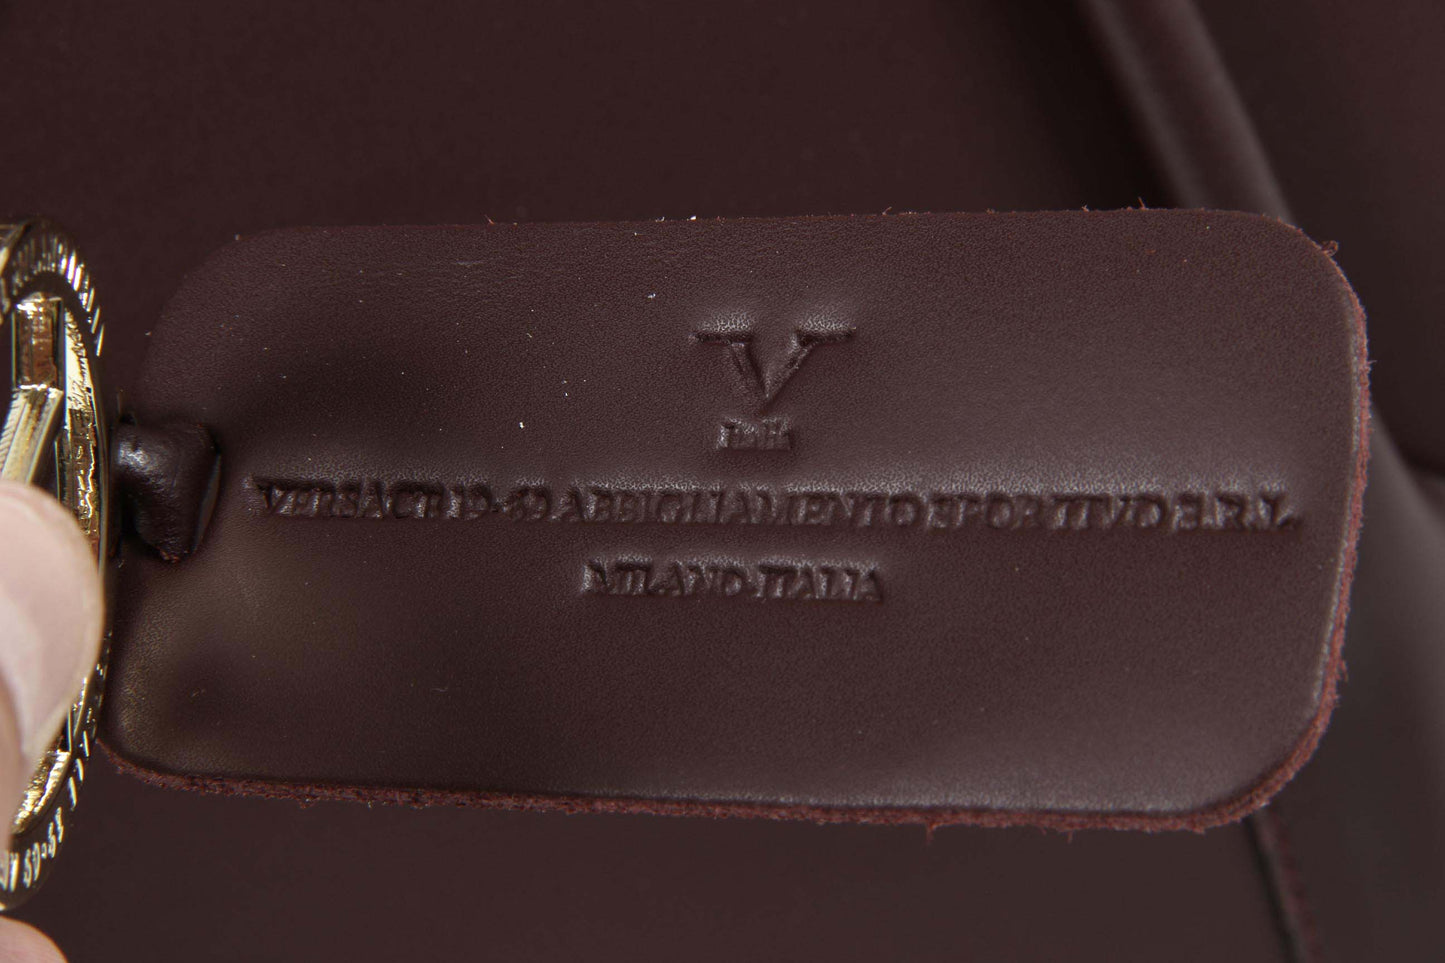 By Versace 19.69 Abbigliamento Sportivo Srl Milano Italia - Dettagli: V020 RUGA BORDO' - Colore: Bordeaux - Composizione: 100% P